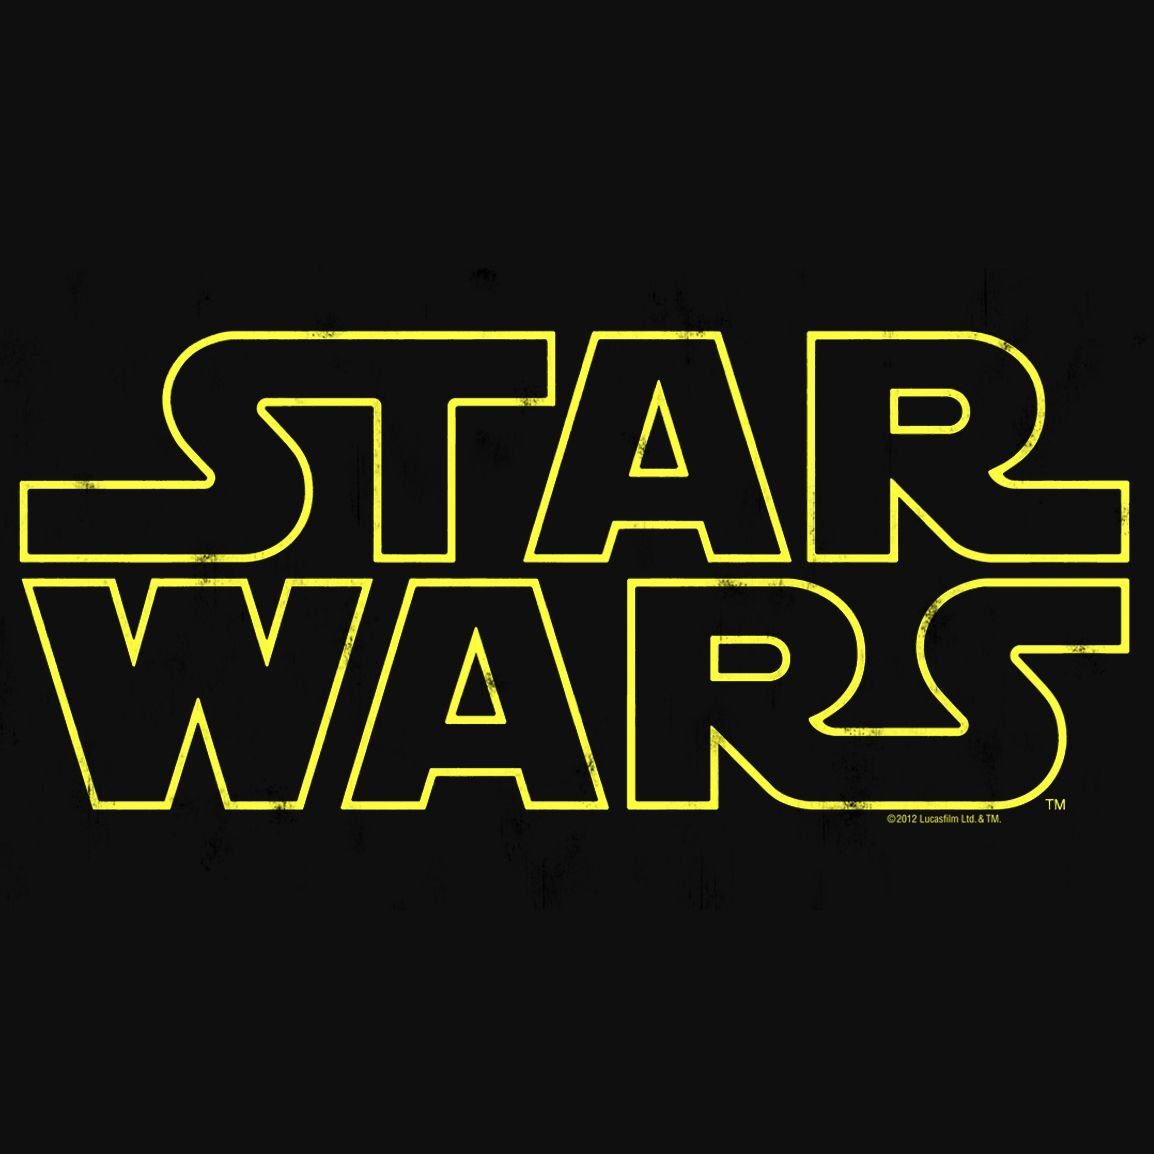 Star T-Shirt Wars-Print tollem Wars mit Star Logo LOGOSHIRT